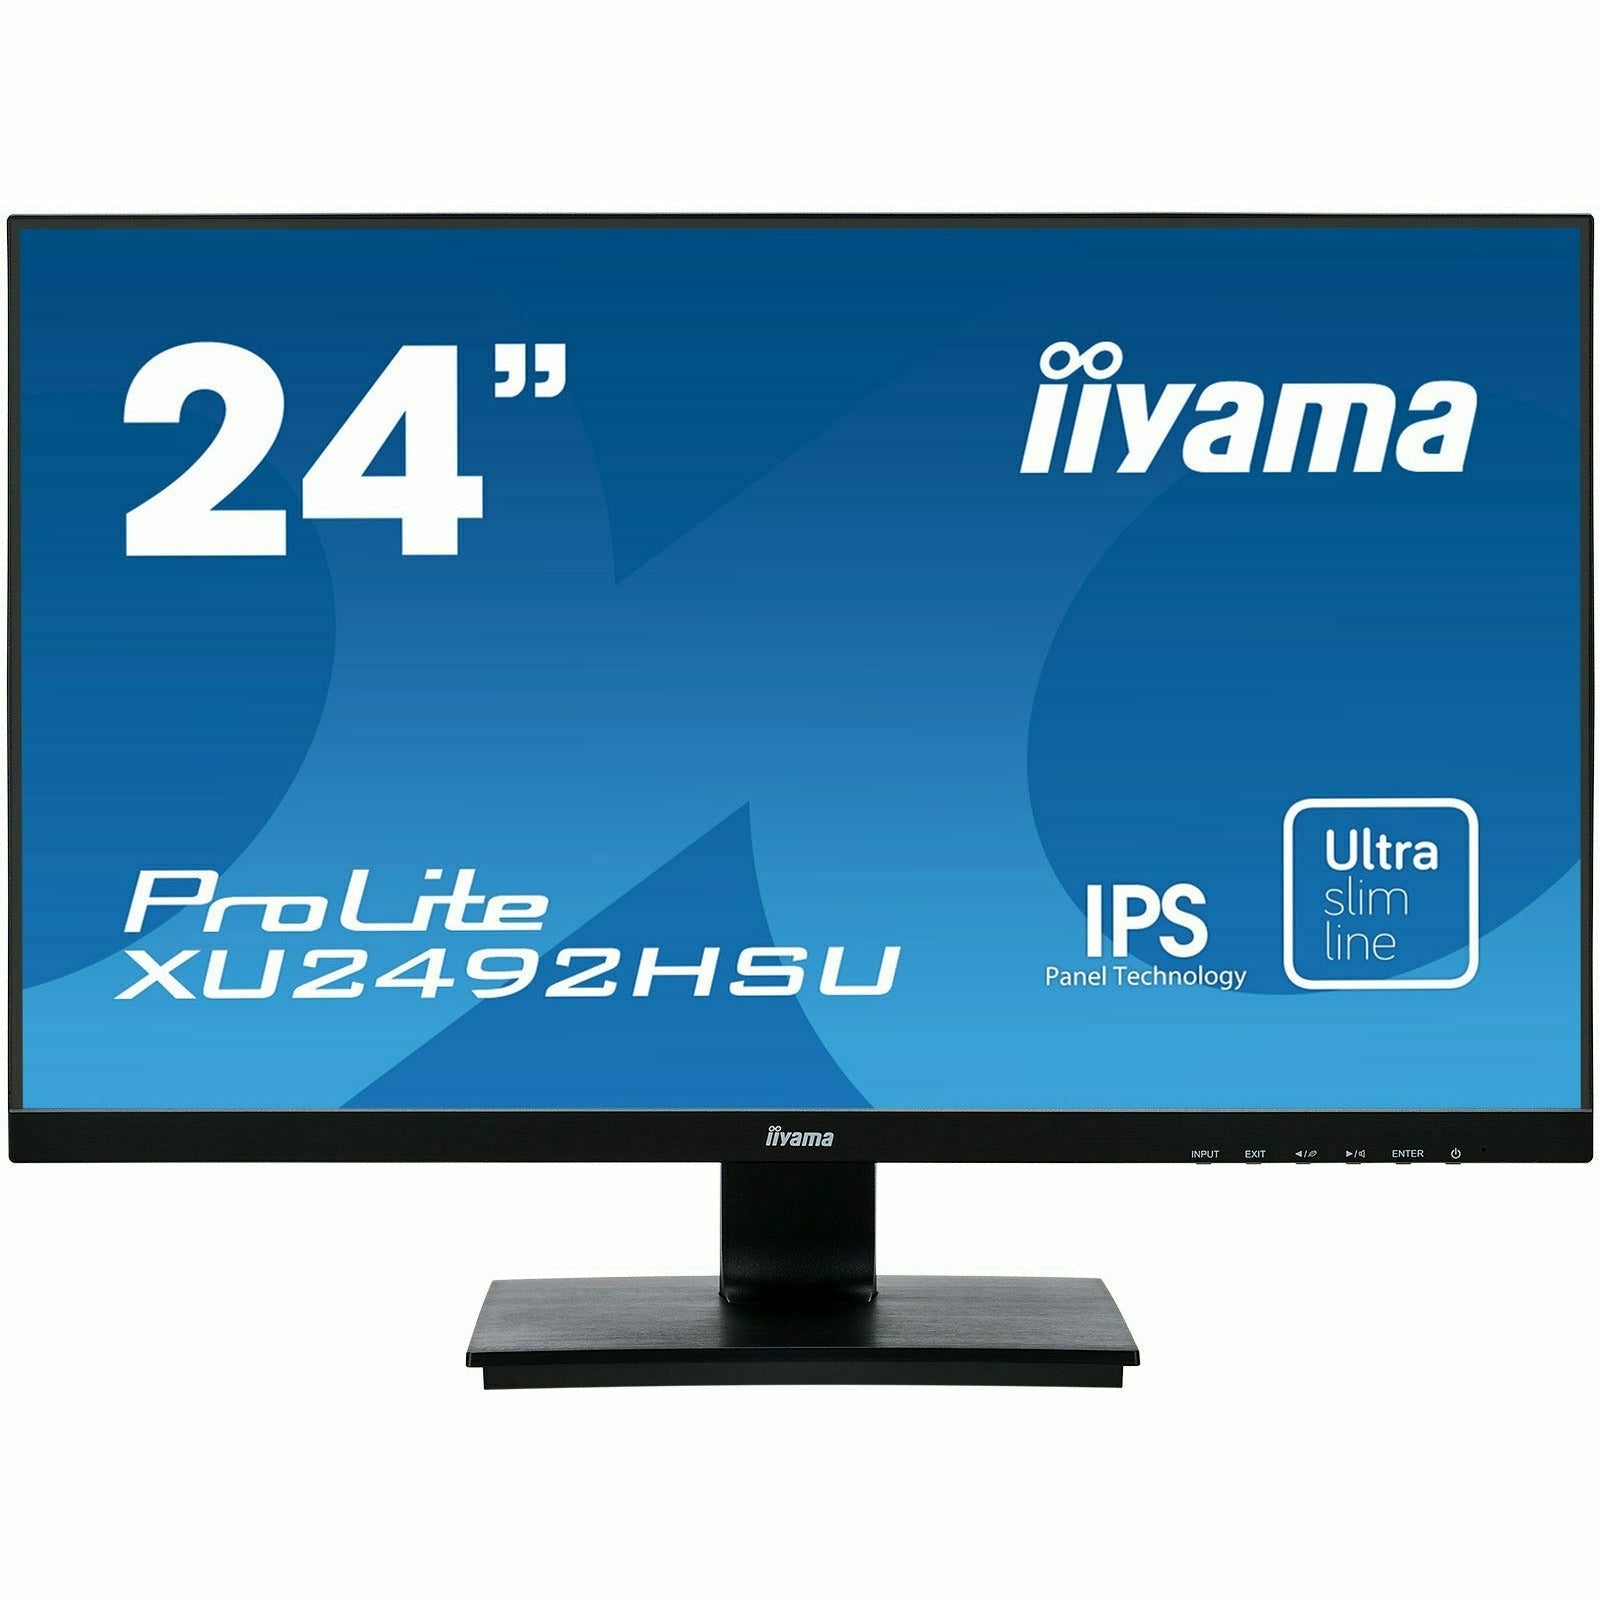 iiyama XU2492HSU-B1 24" IPS LCD Slim Bezel Monitor